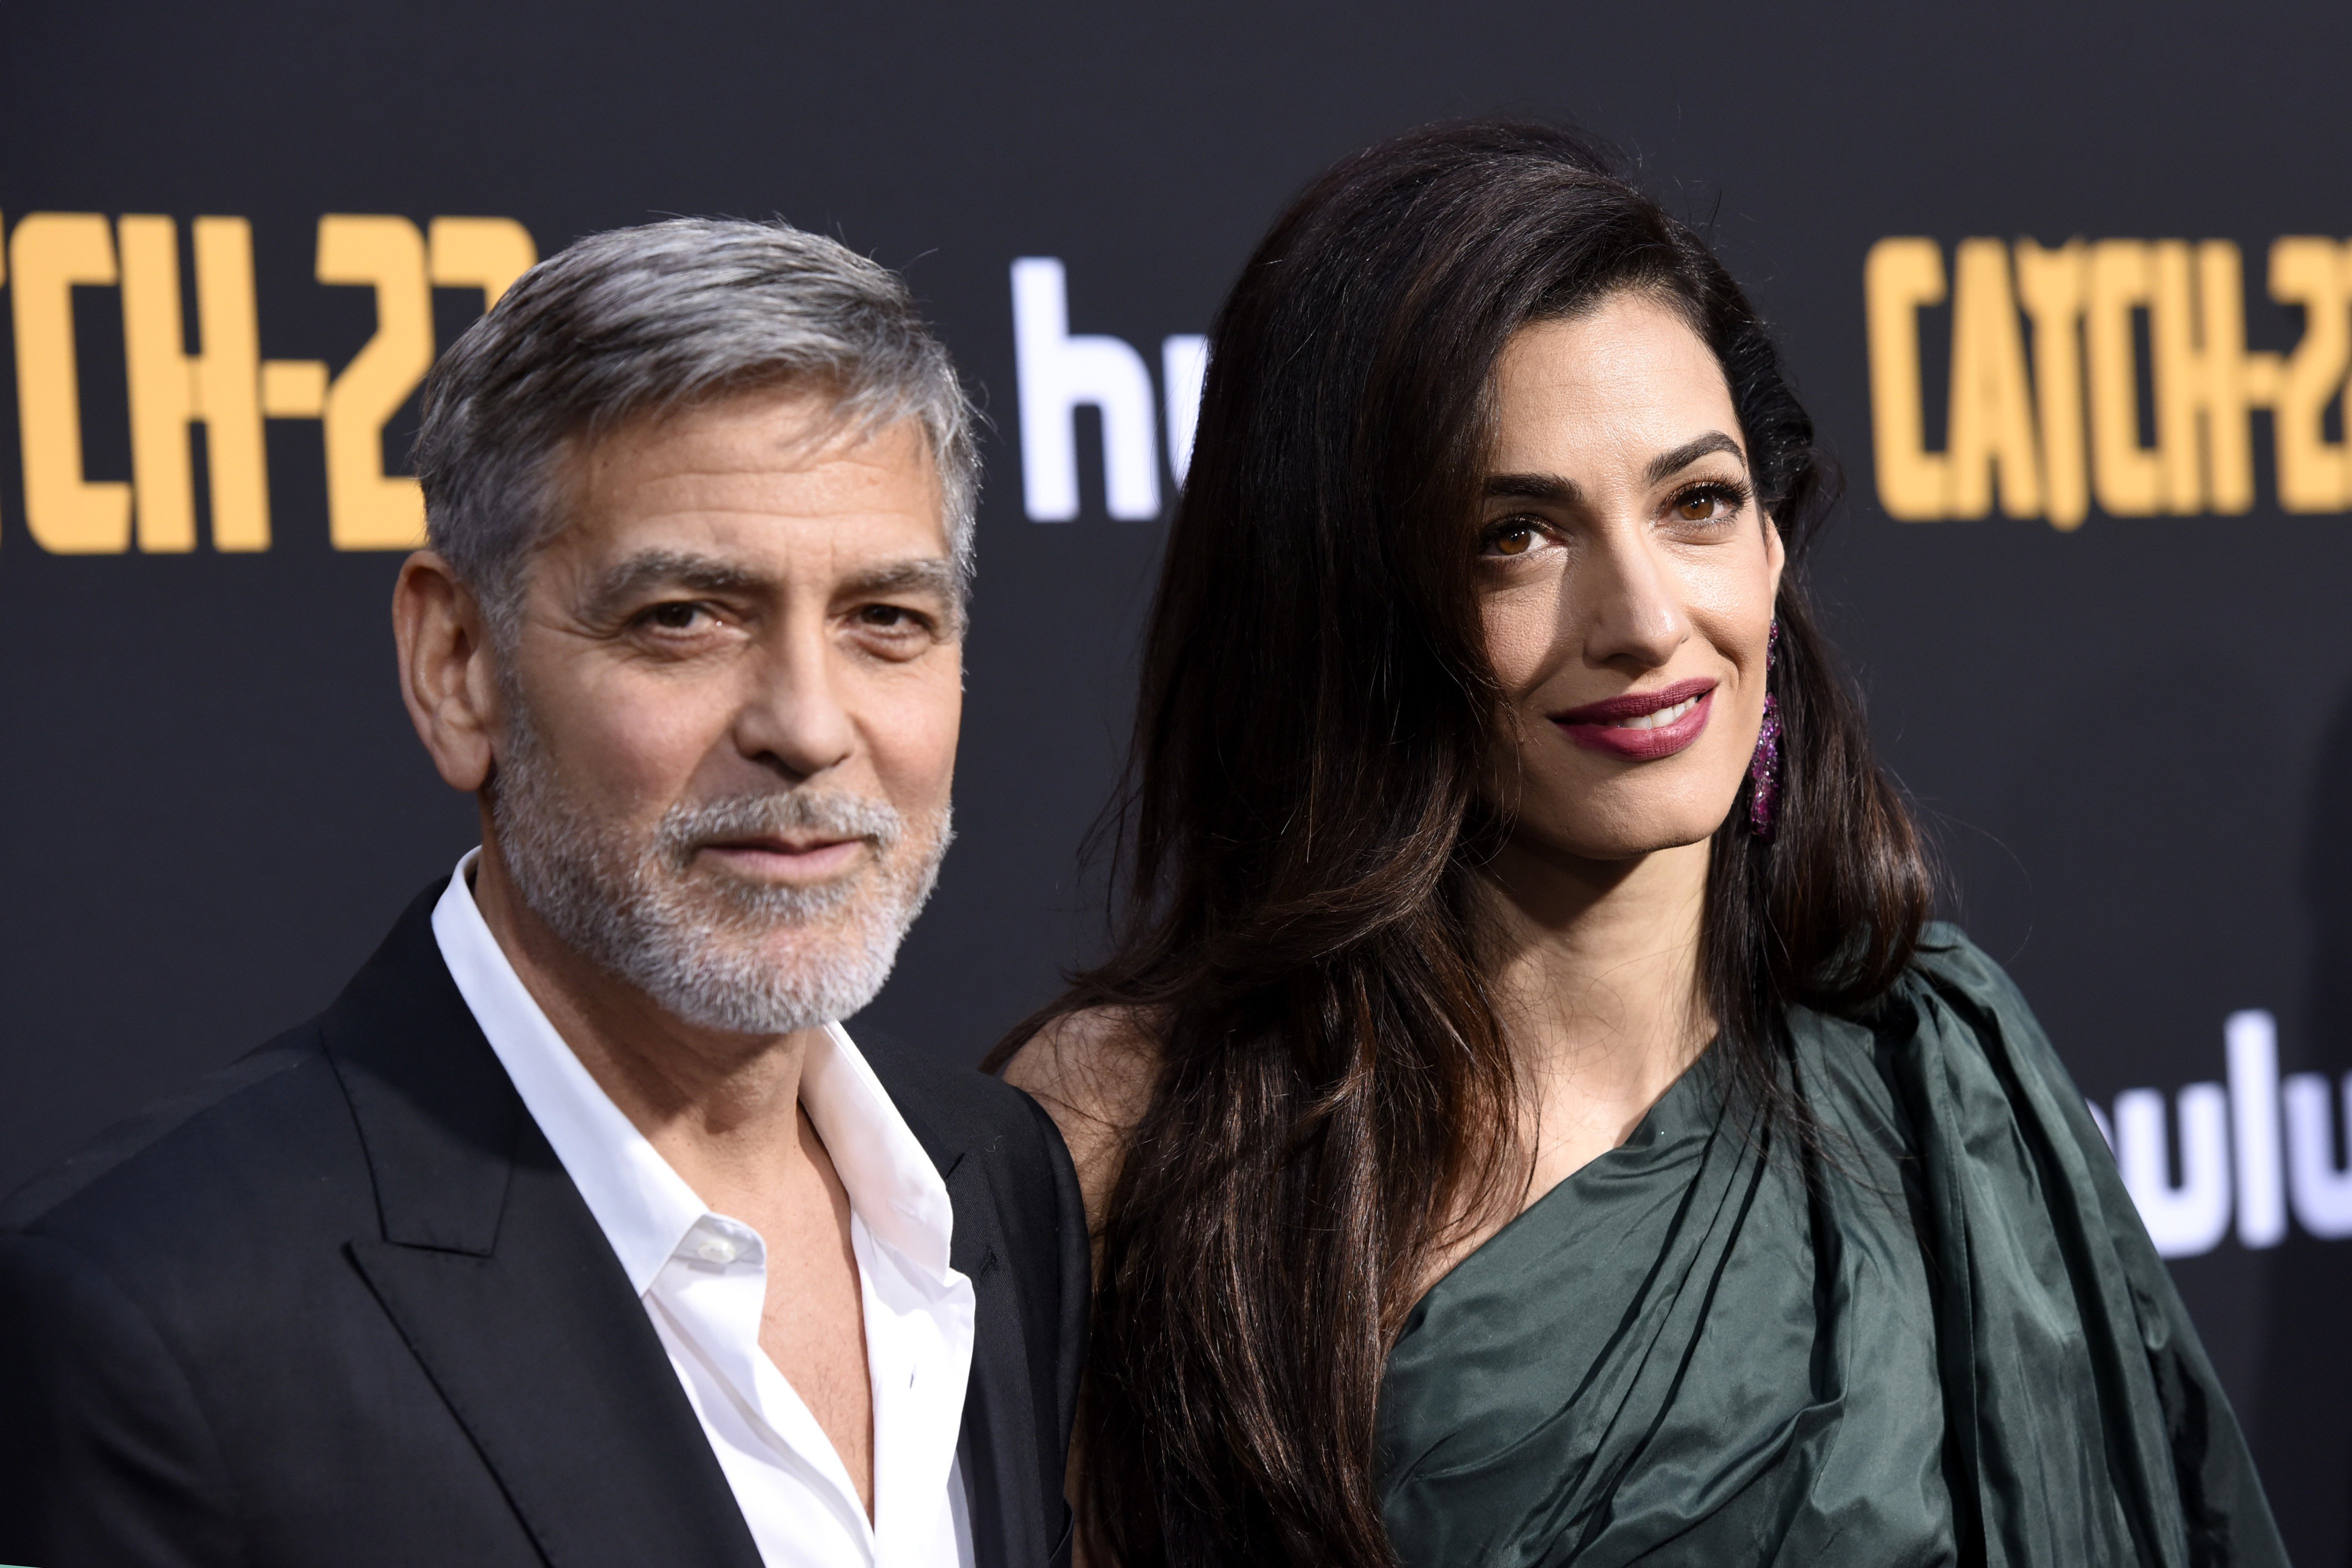 George y Amal Clooney asisten al estreno de "Catch-22" en Hollywood, California. | Foto: Getty Images